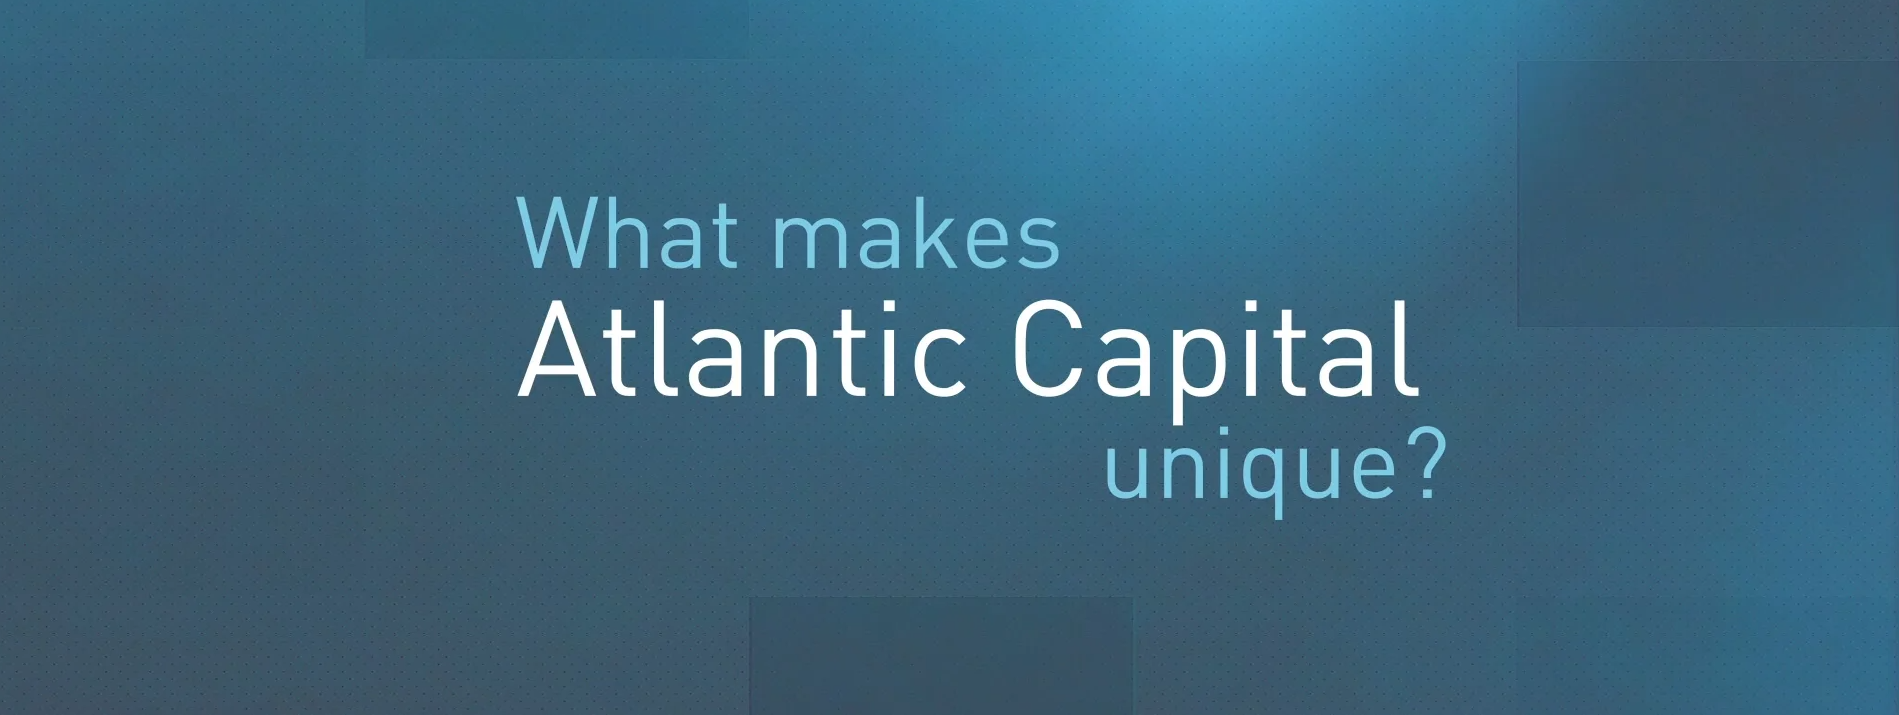 What Makes Atlantic Capital Unique Atlantic Capital Bank